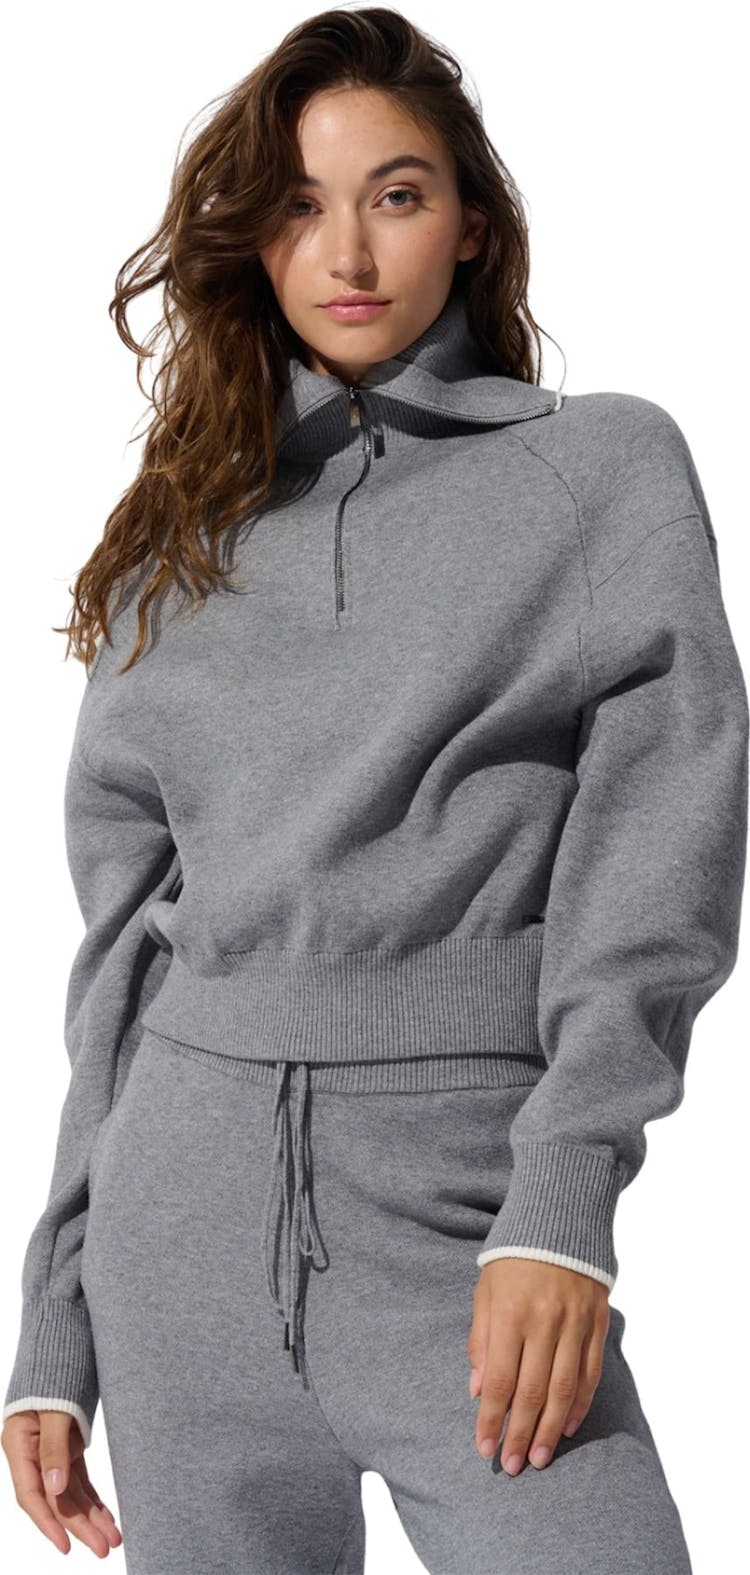 Numéro de l'image de la galerie de produits 4 pour le produit Pantalon de jogging en tricot - Femme